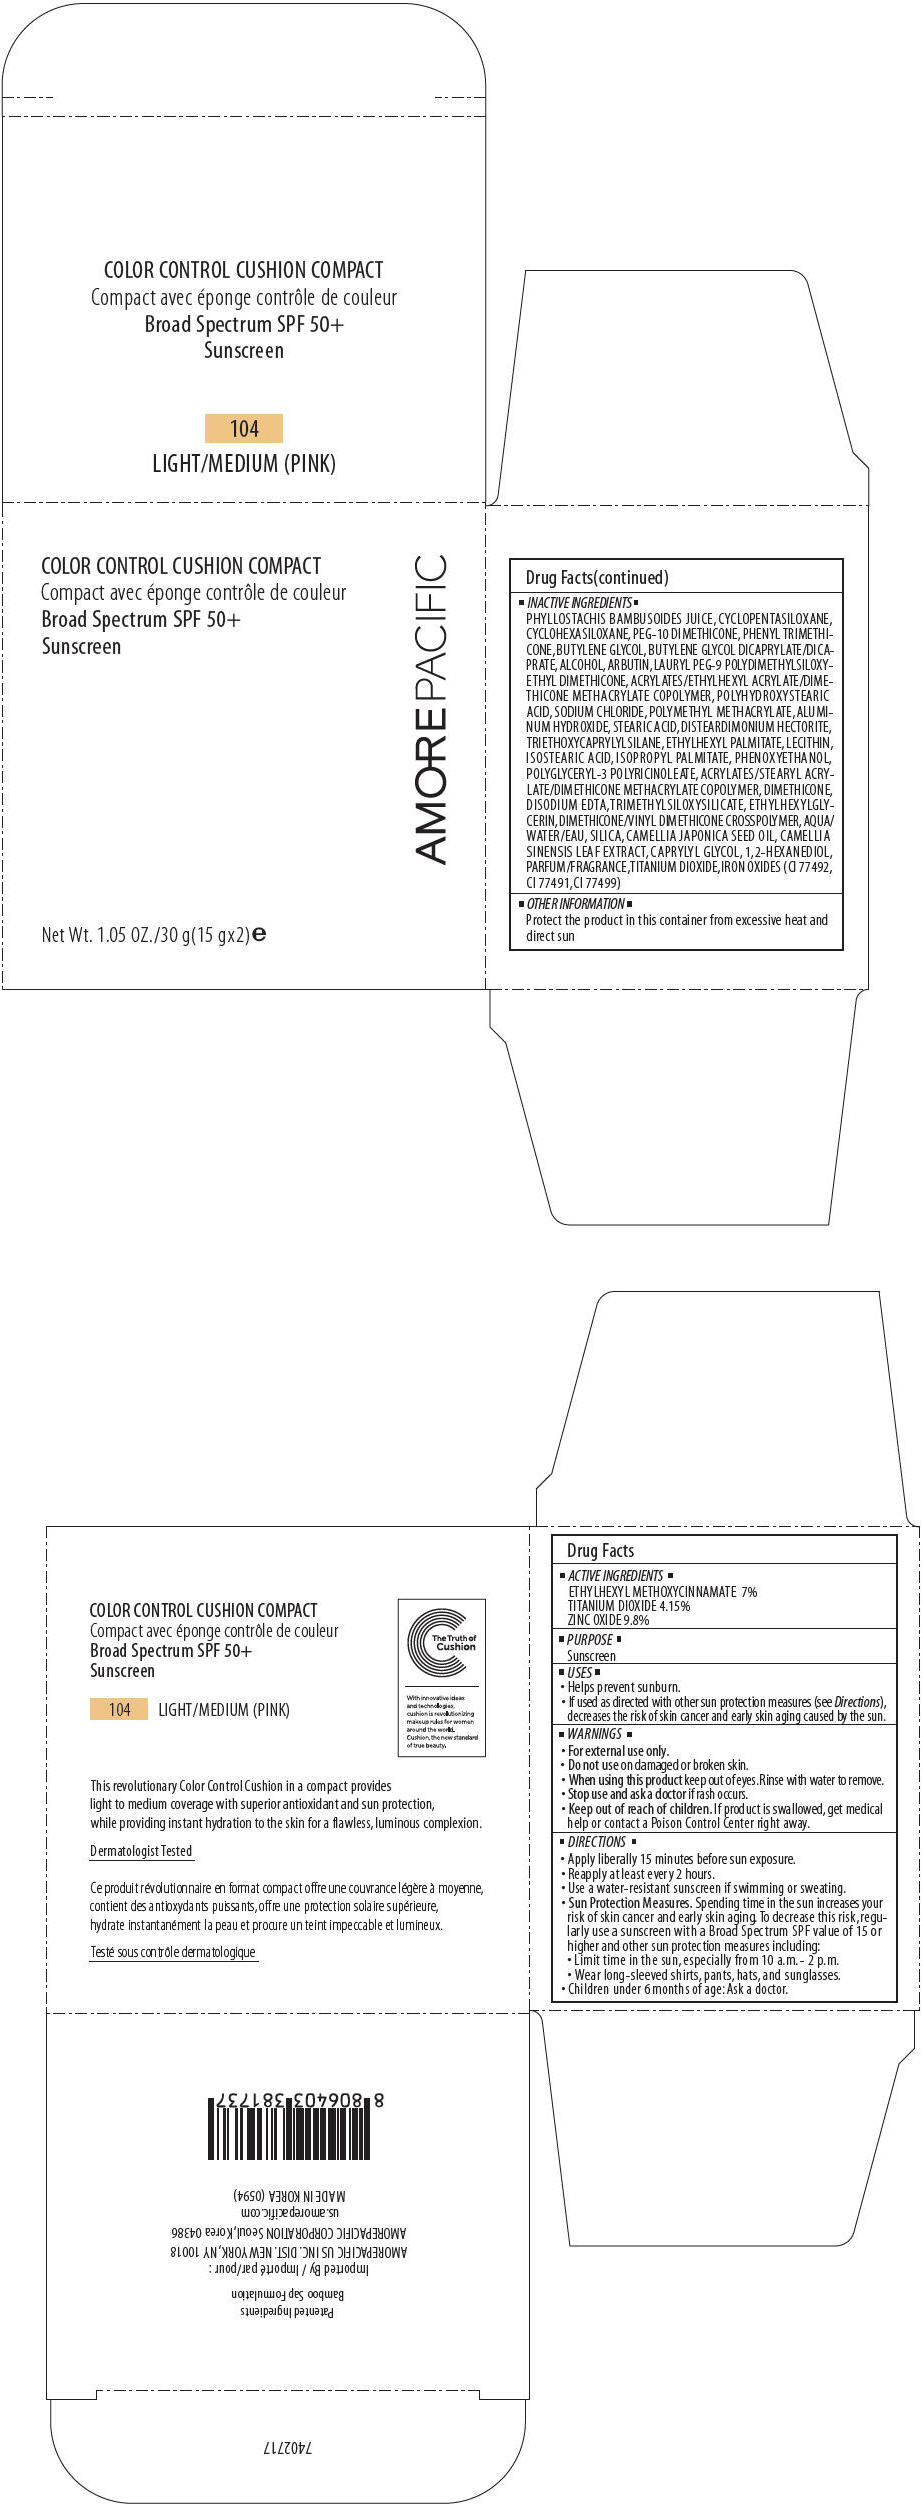 PRINCIPAL DISPLAY PANEL - 30 g Container Carton - 104 LIGHT/MEDIUM (PINK)